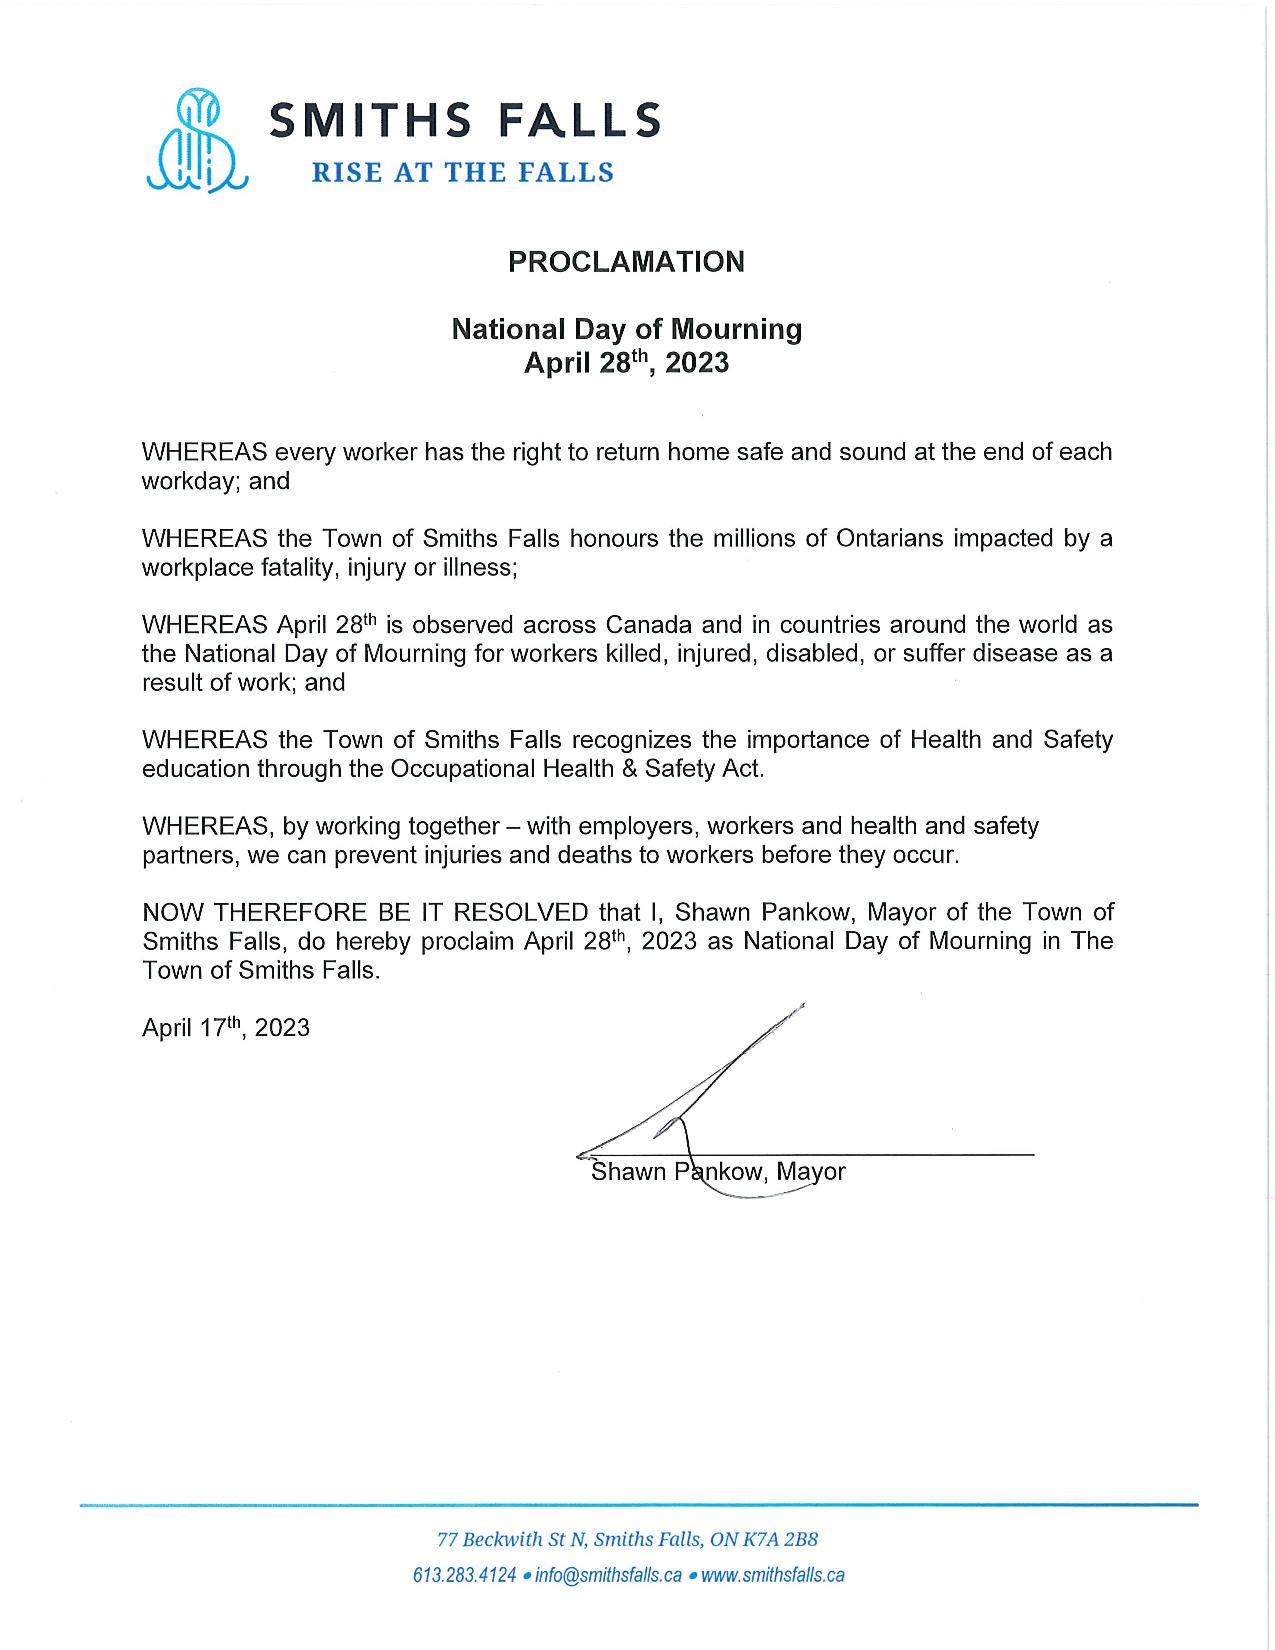 Mayor proclamation of National Day of Mourning